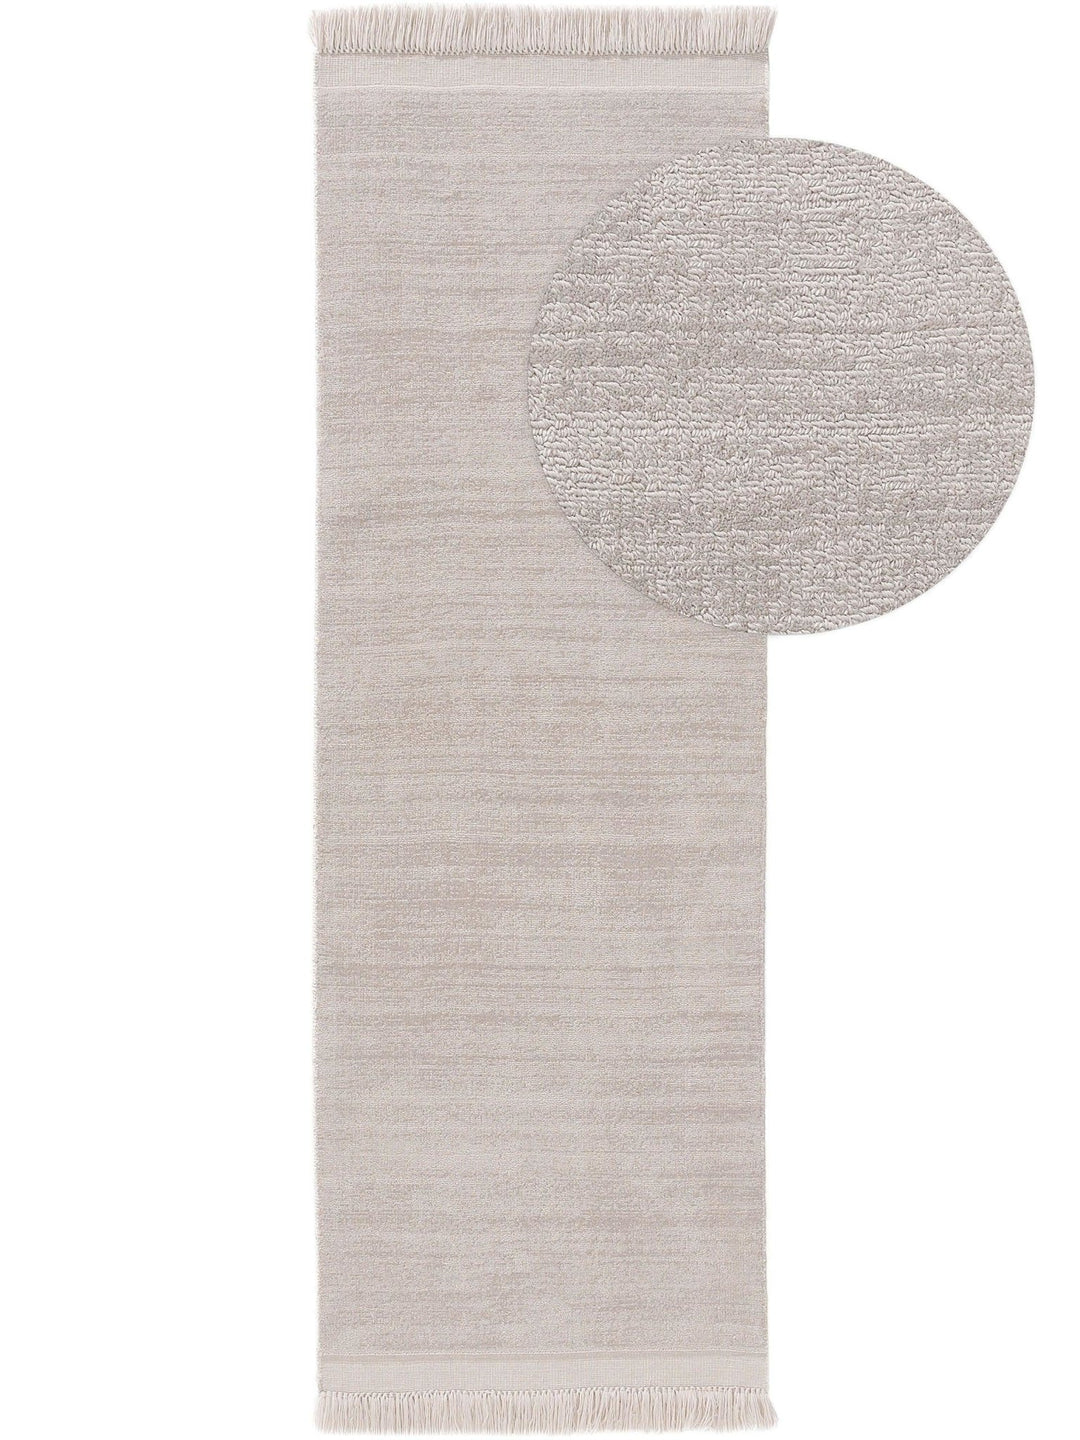 Teppich aus recyceltem Material Jade Hellgrau - benuta ESSENTIALS - RugDreams®